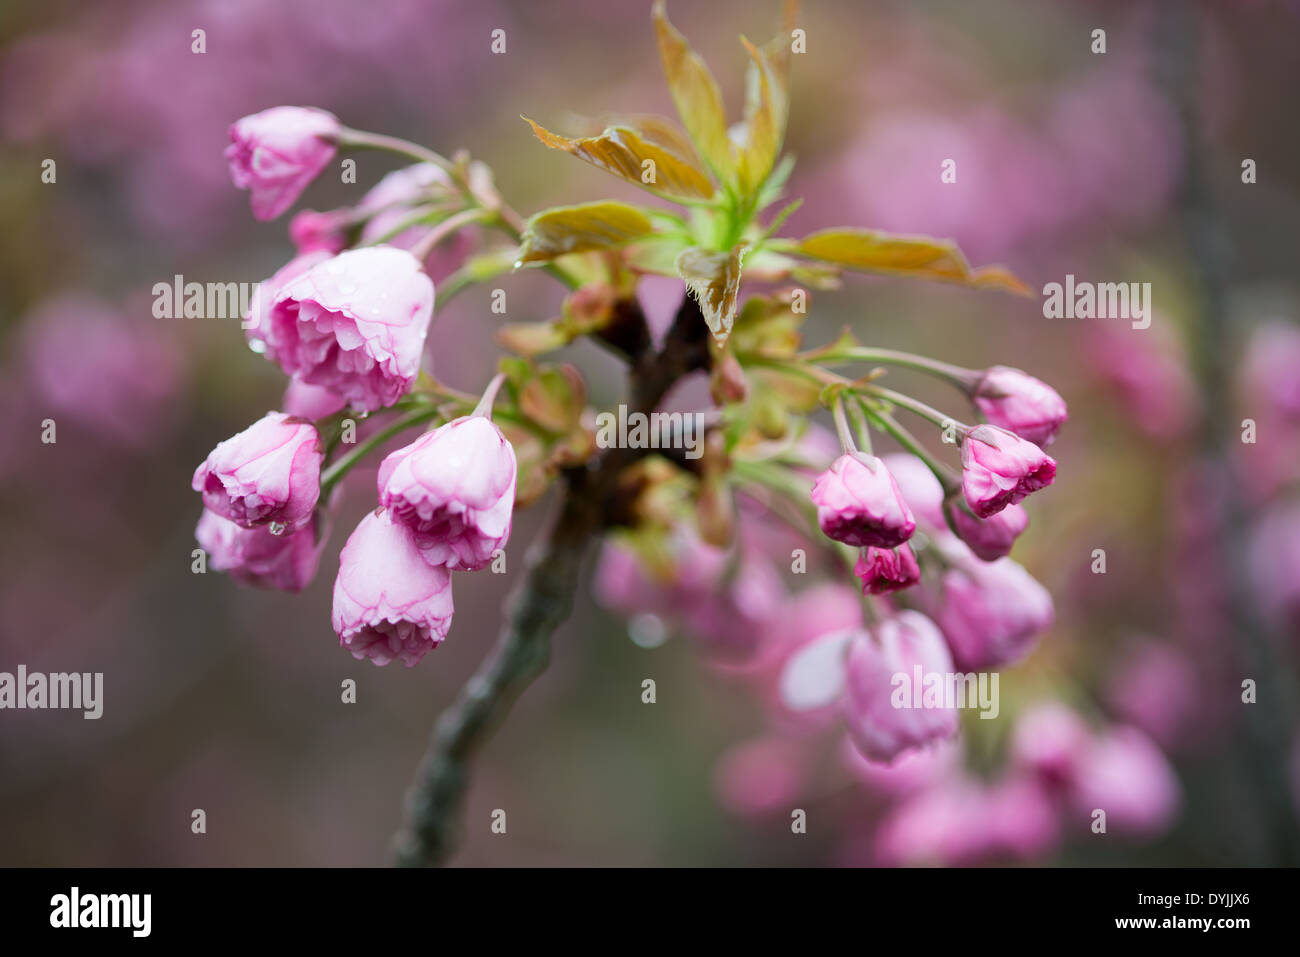 WASHINGTON DC, USA - Bis zum 15. April, dem berühmten yoshino Cherry Blossoms rund um das Tidal Basin haben ihre Blütenblätter fallen und beginnen mit grünen Blättern bedeckt zu werden. Ein paar andere Sorten von Kirschblüten, wie die Kwanzan sind nur beginnen zu blühen. Stockfoto